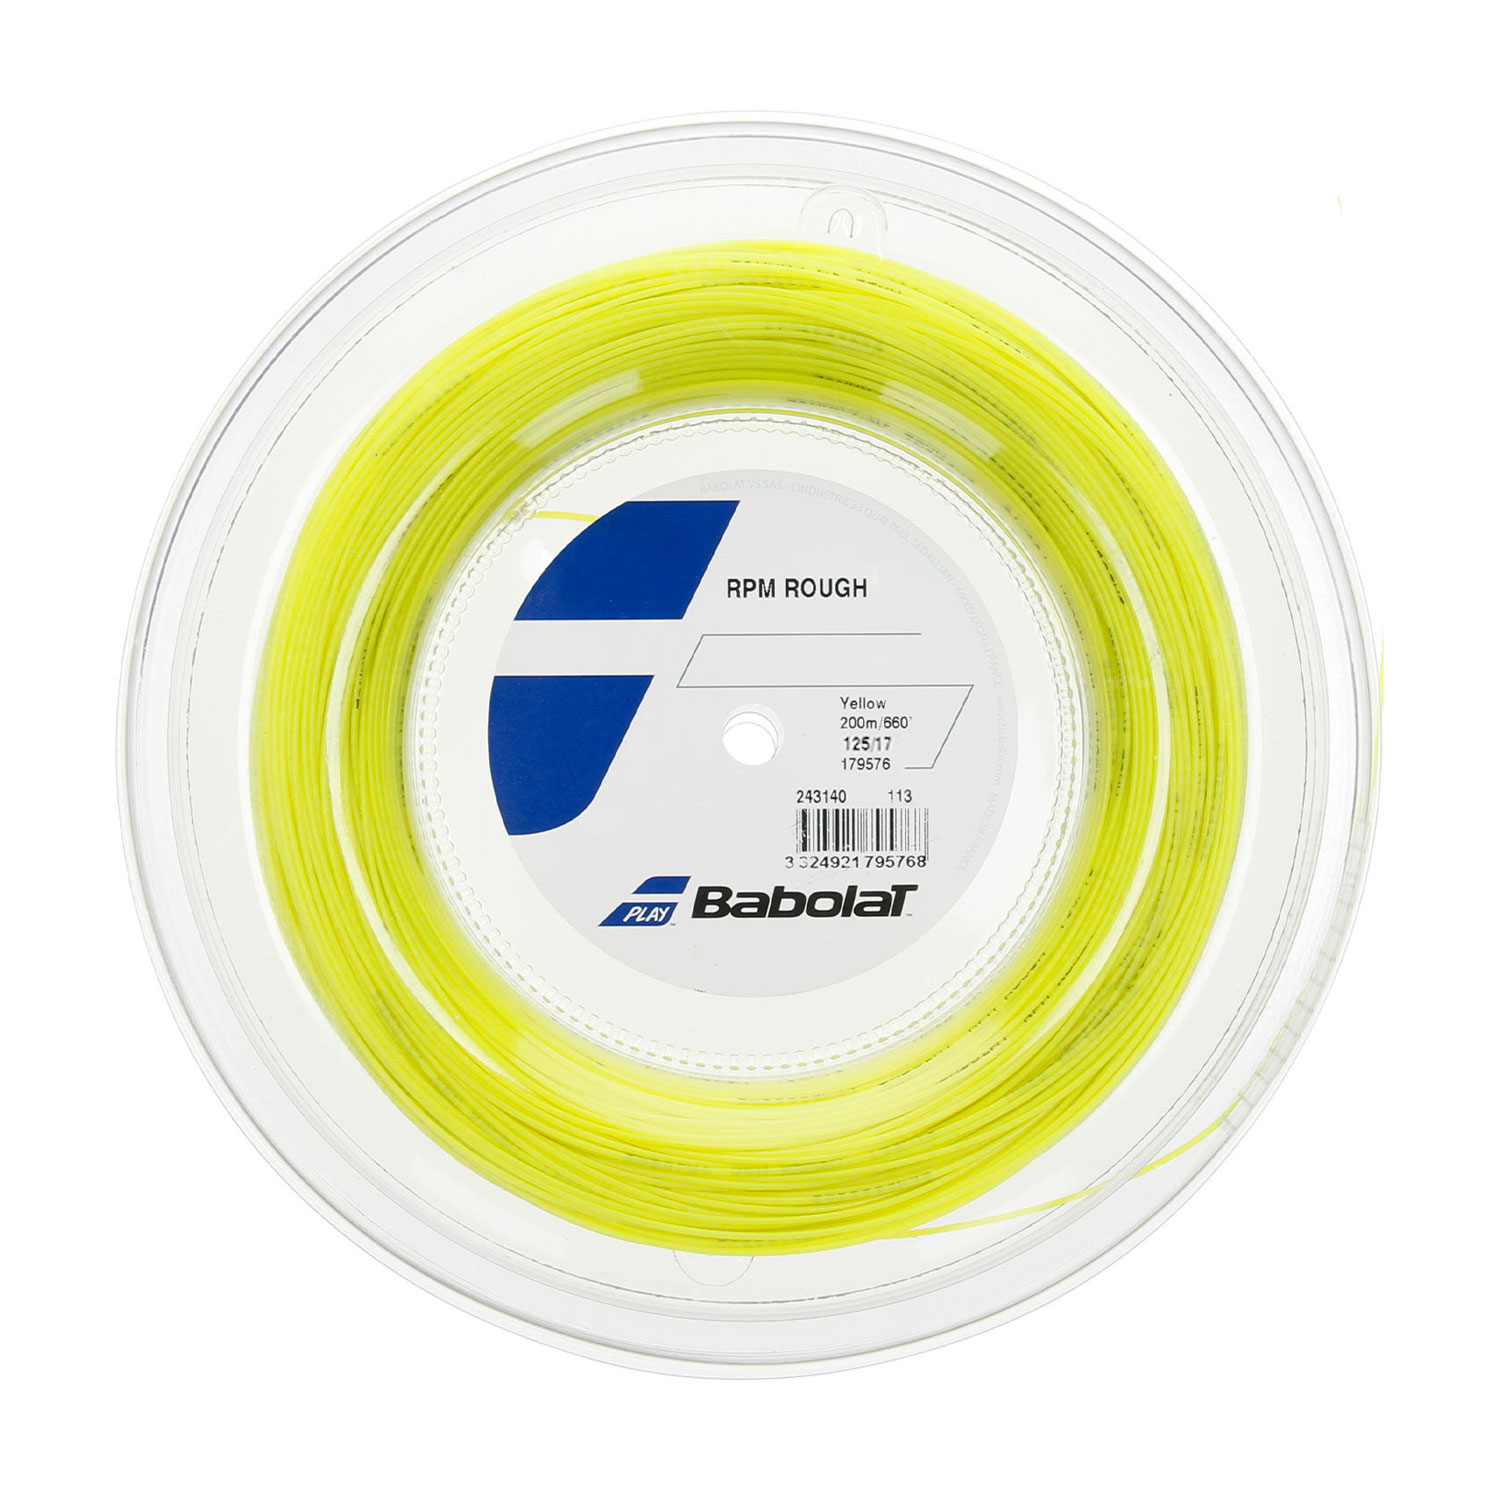 Babolat RPM Rough 1.25 Bobina 200 m - Yellow